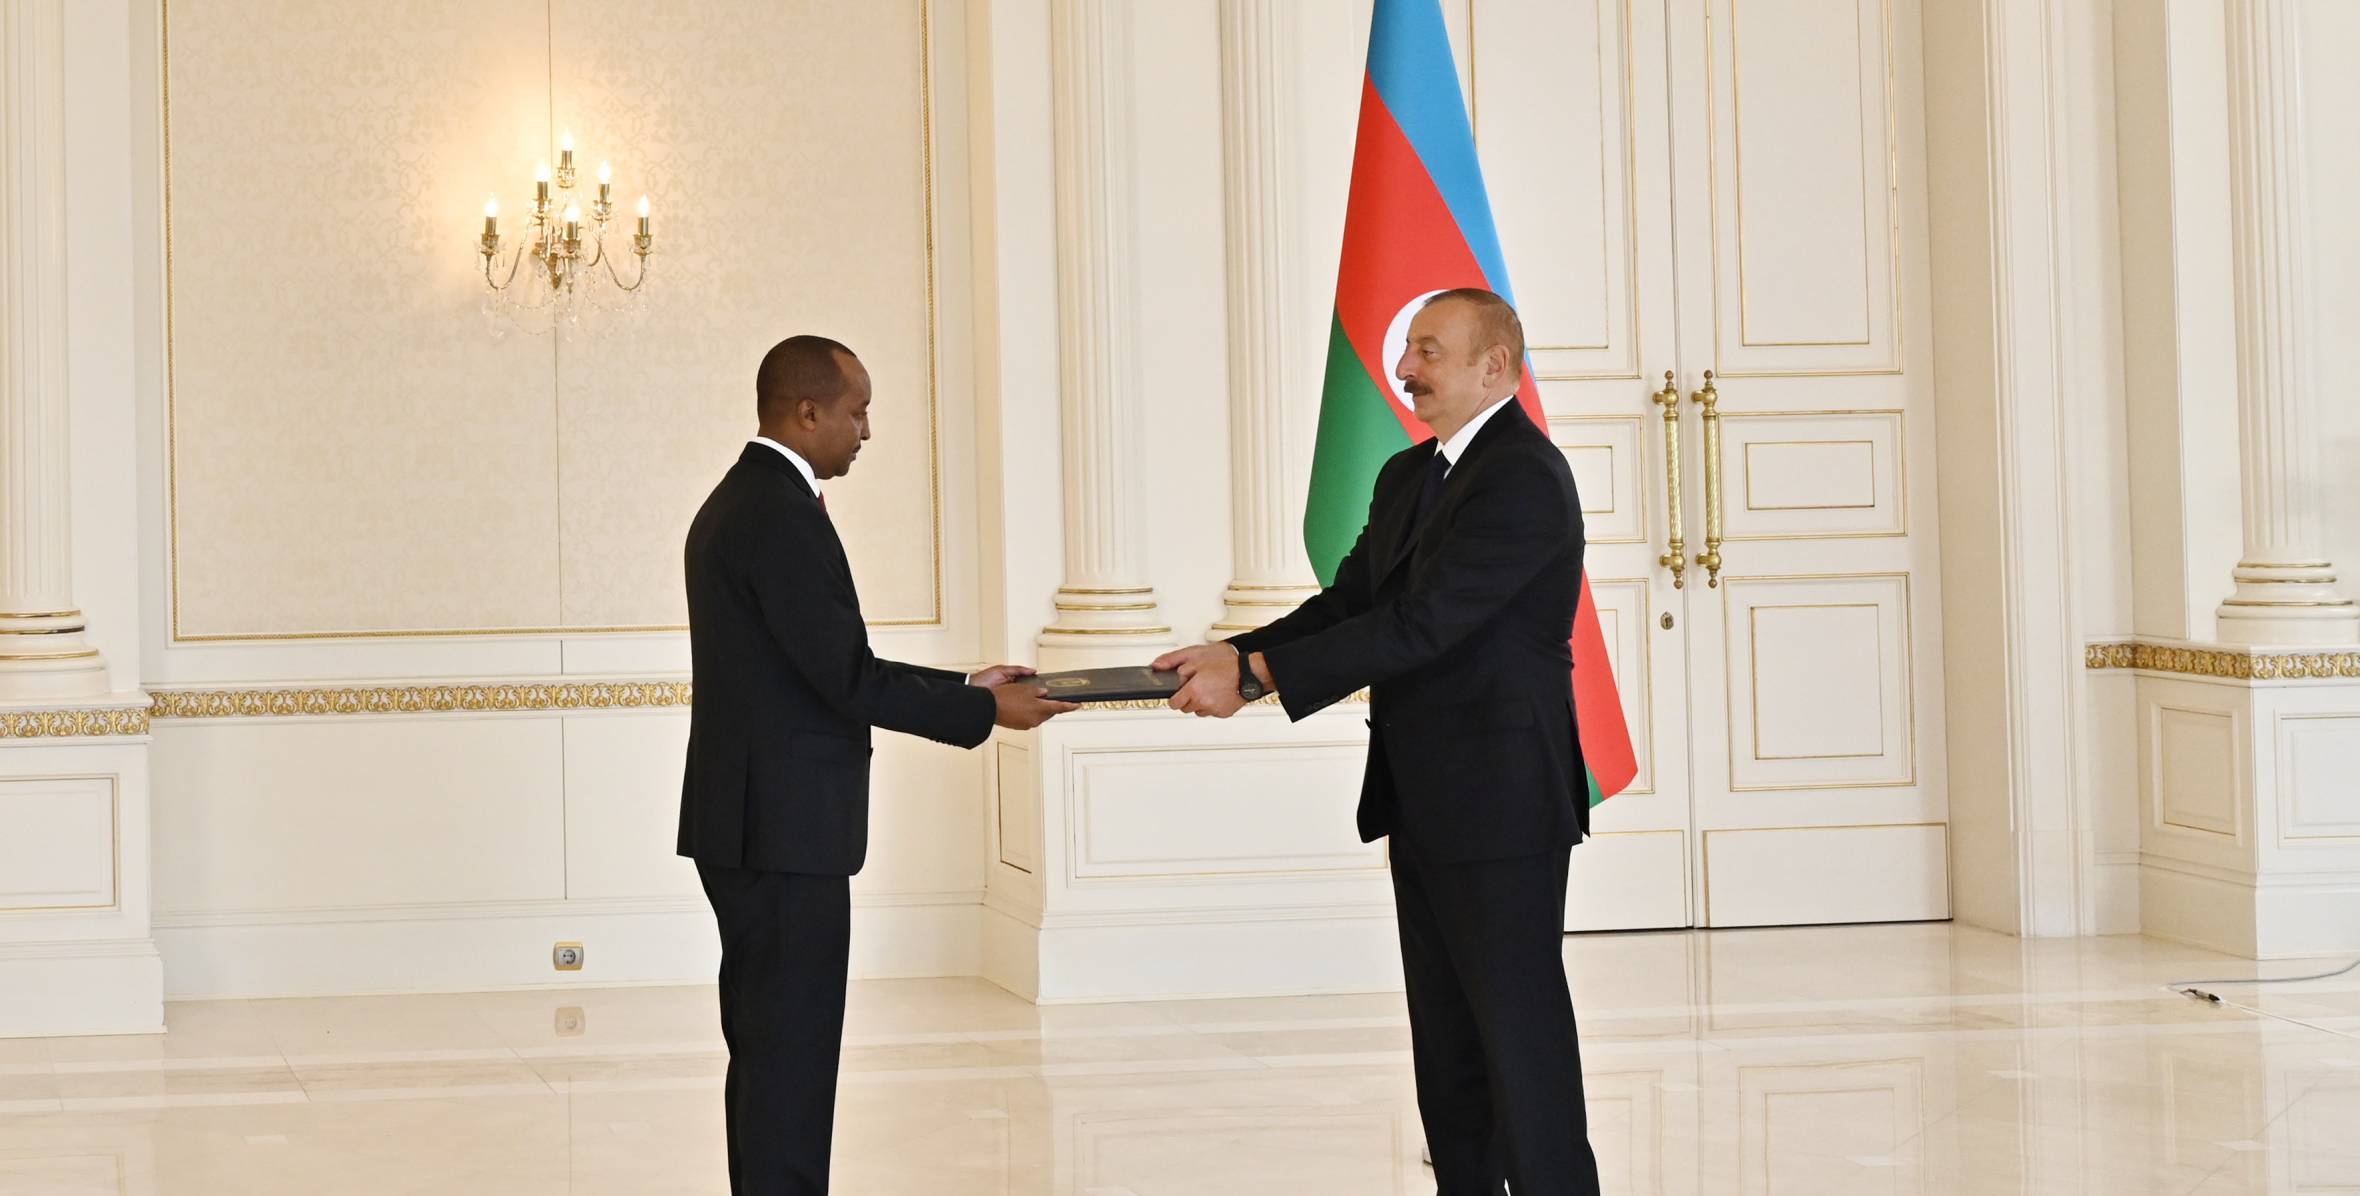 Ильхам Алиев принял верительные грамоты новоназначенного посла Руанды в Азербайджане